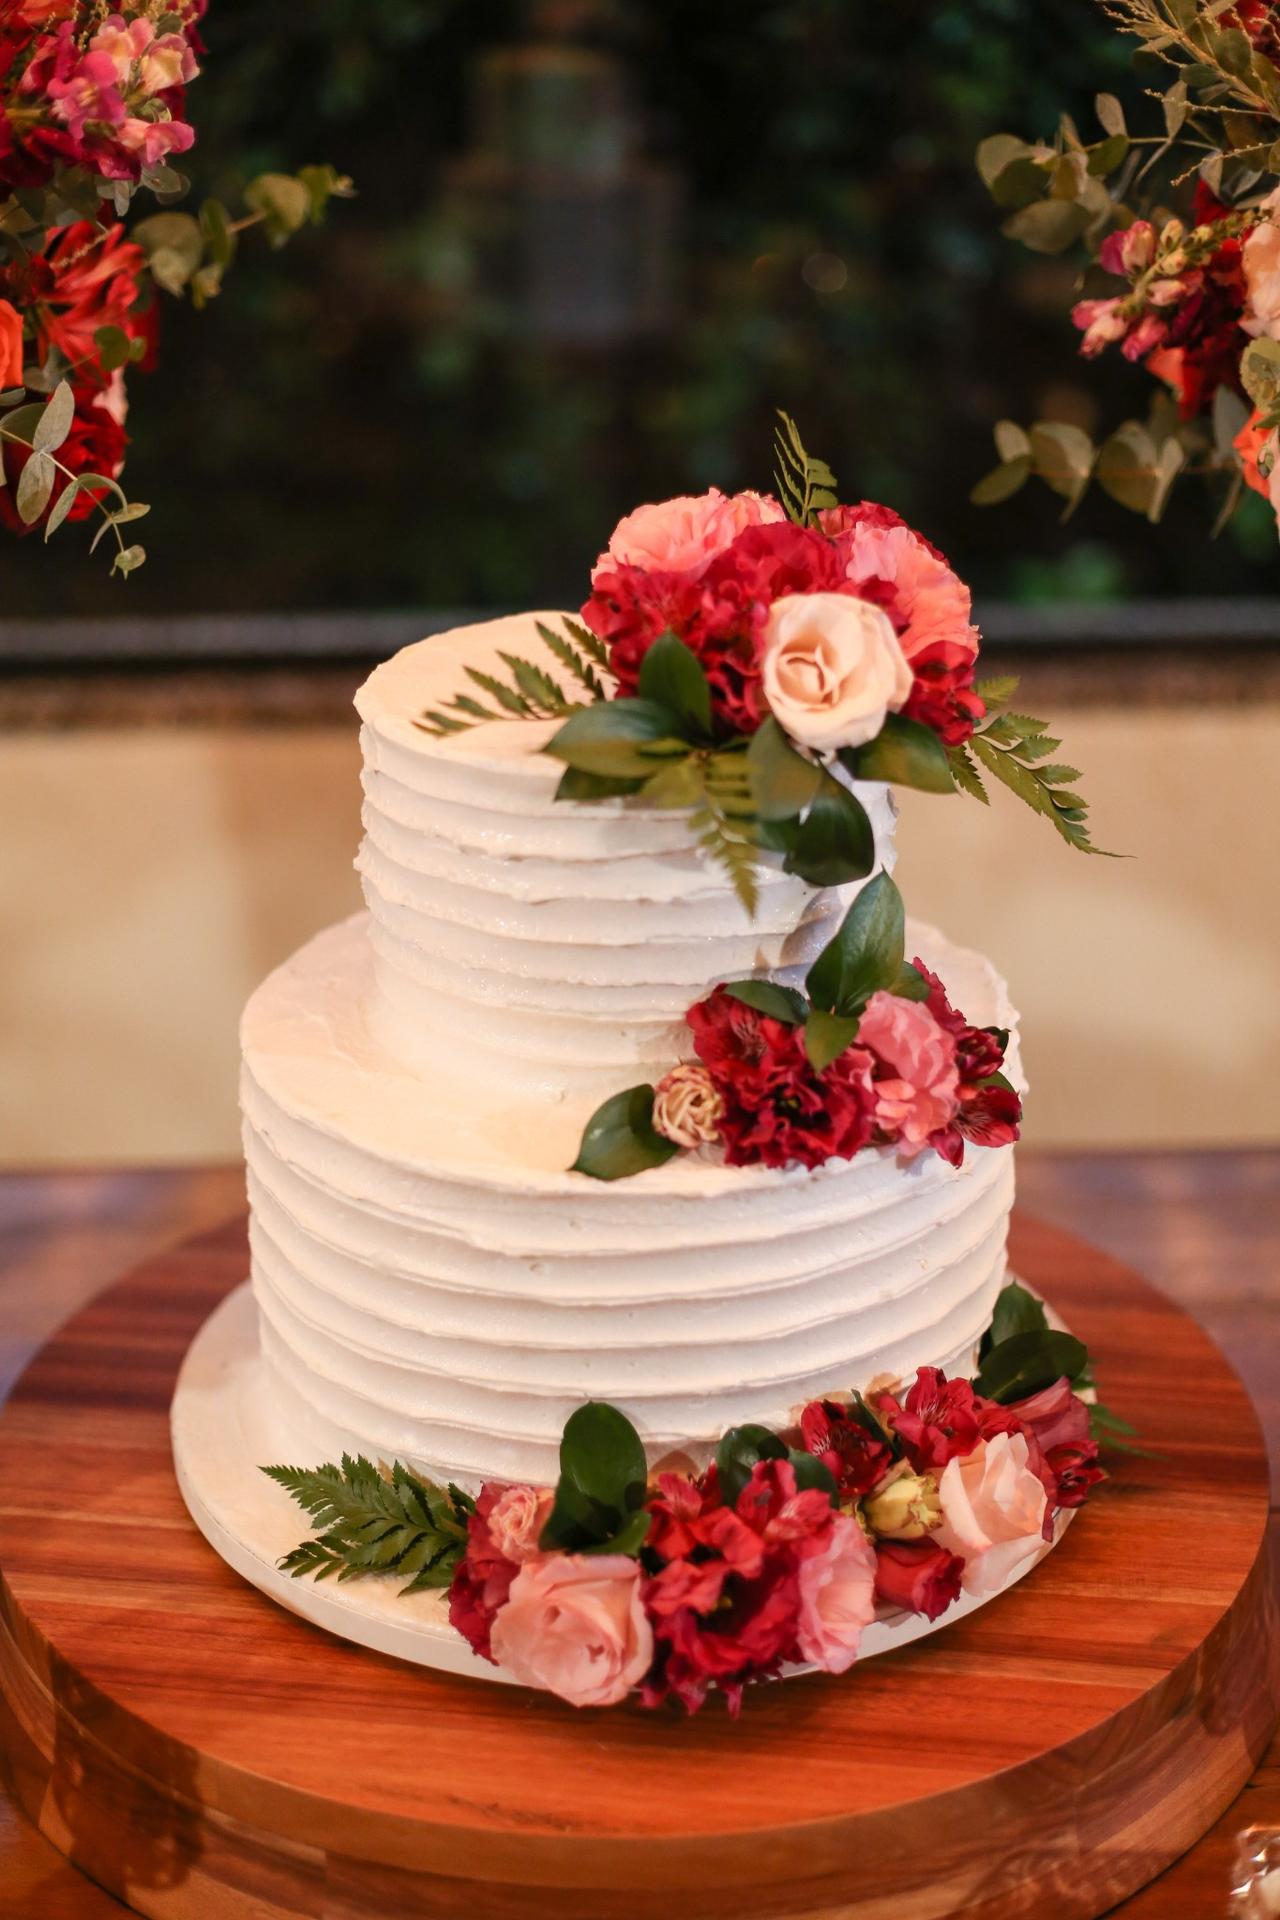 bolo decorado com chantilly vermelho e branco Bolo vermelho, Bolos  decorados com chantilly, Bolo confeitado quadrado, bolo de maquiagem  quadrado